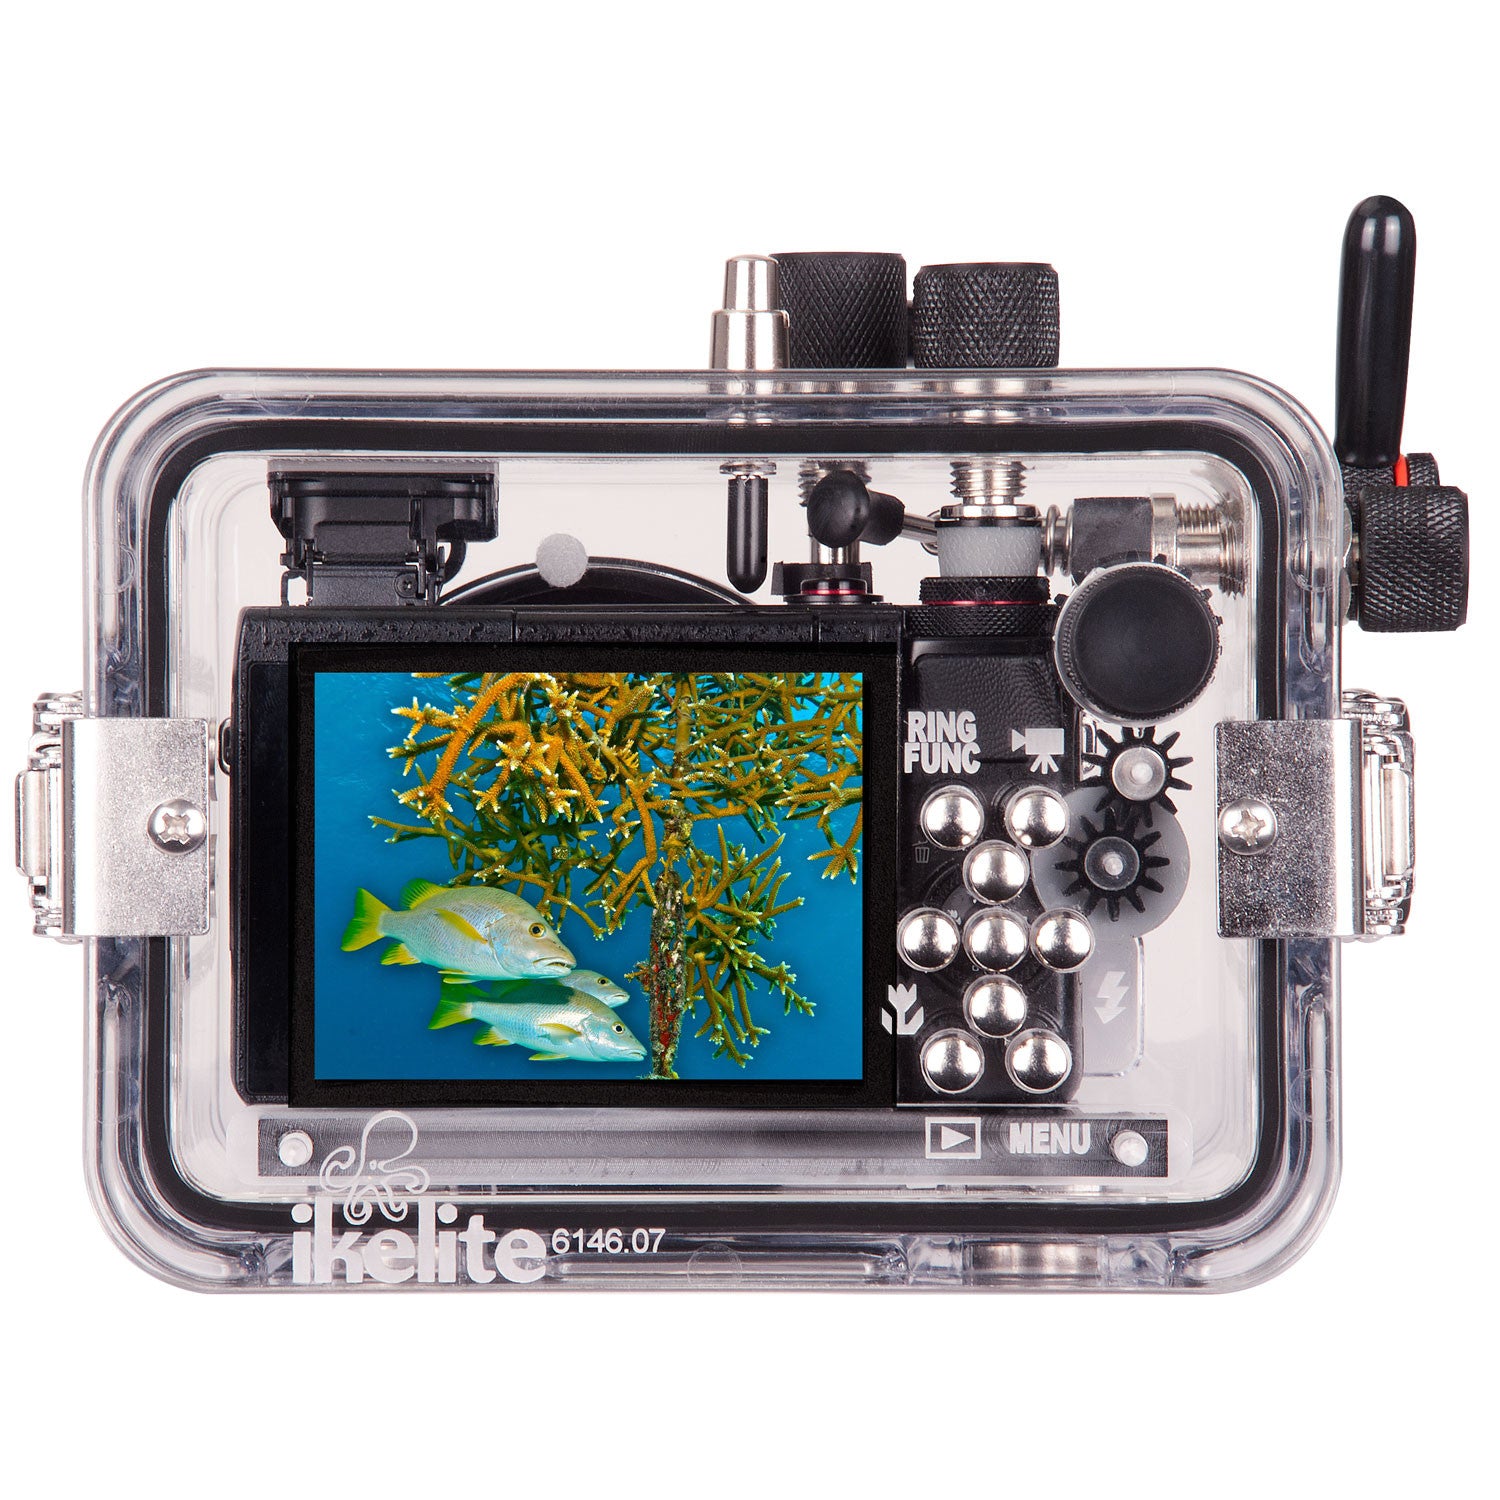 Underwater Housing for Canon PowerShot G7 X